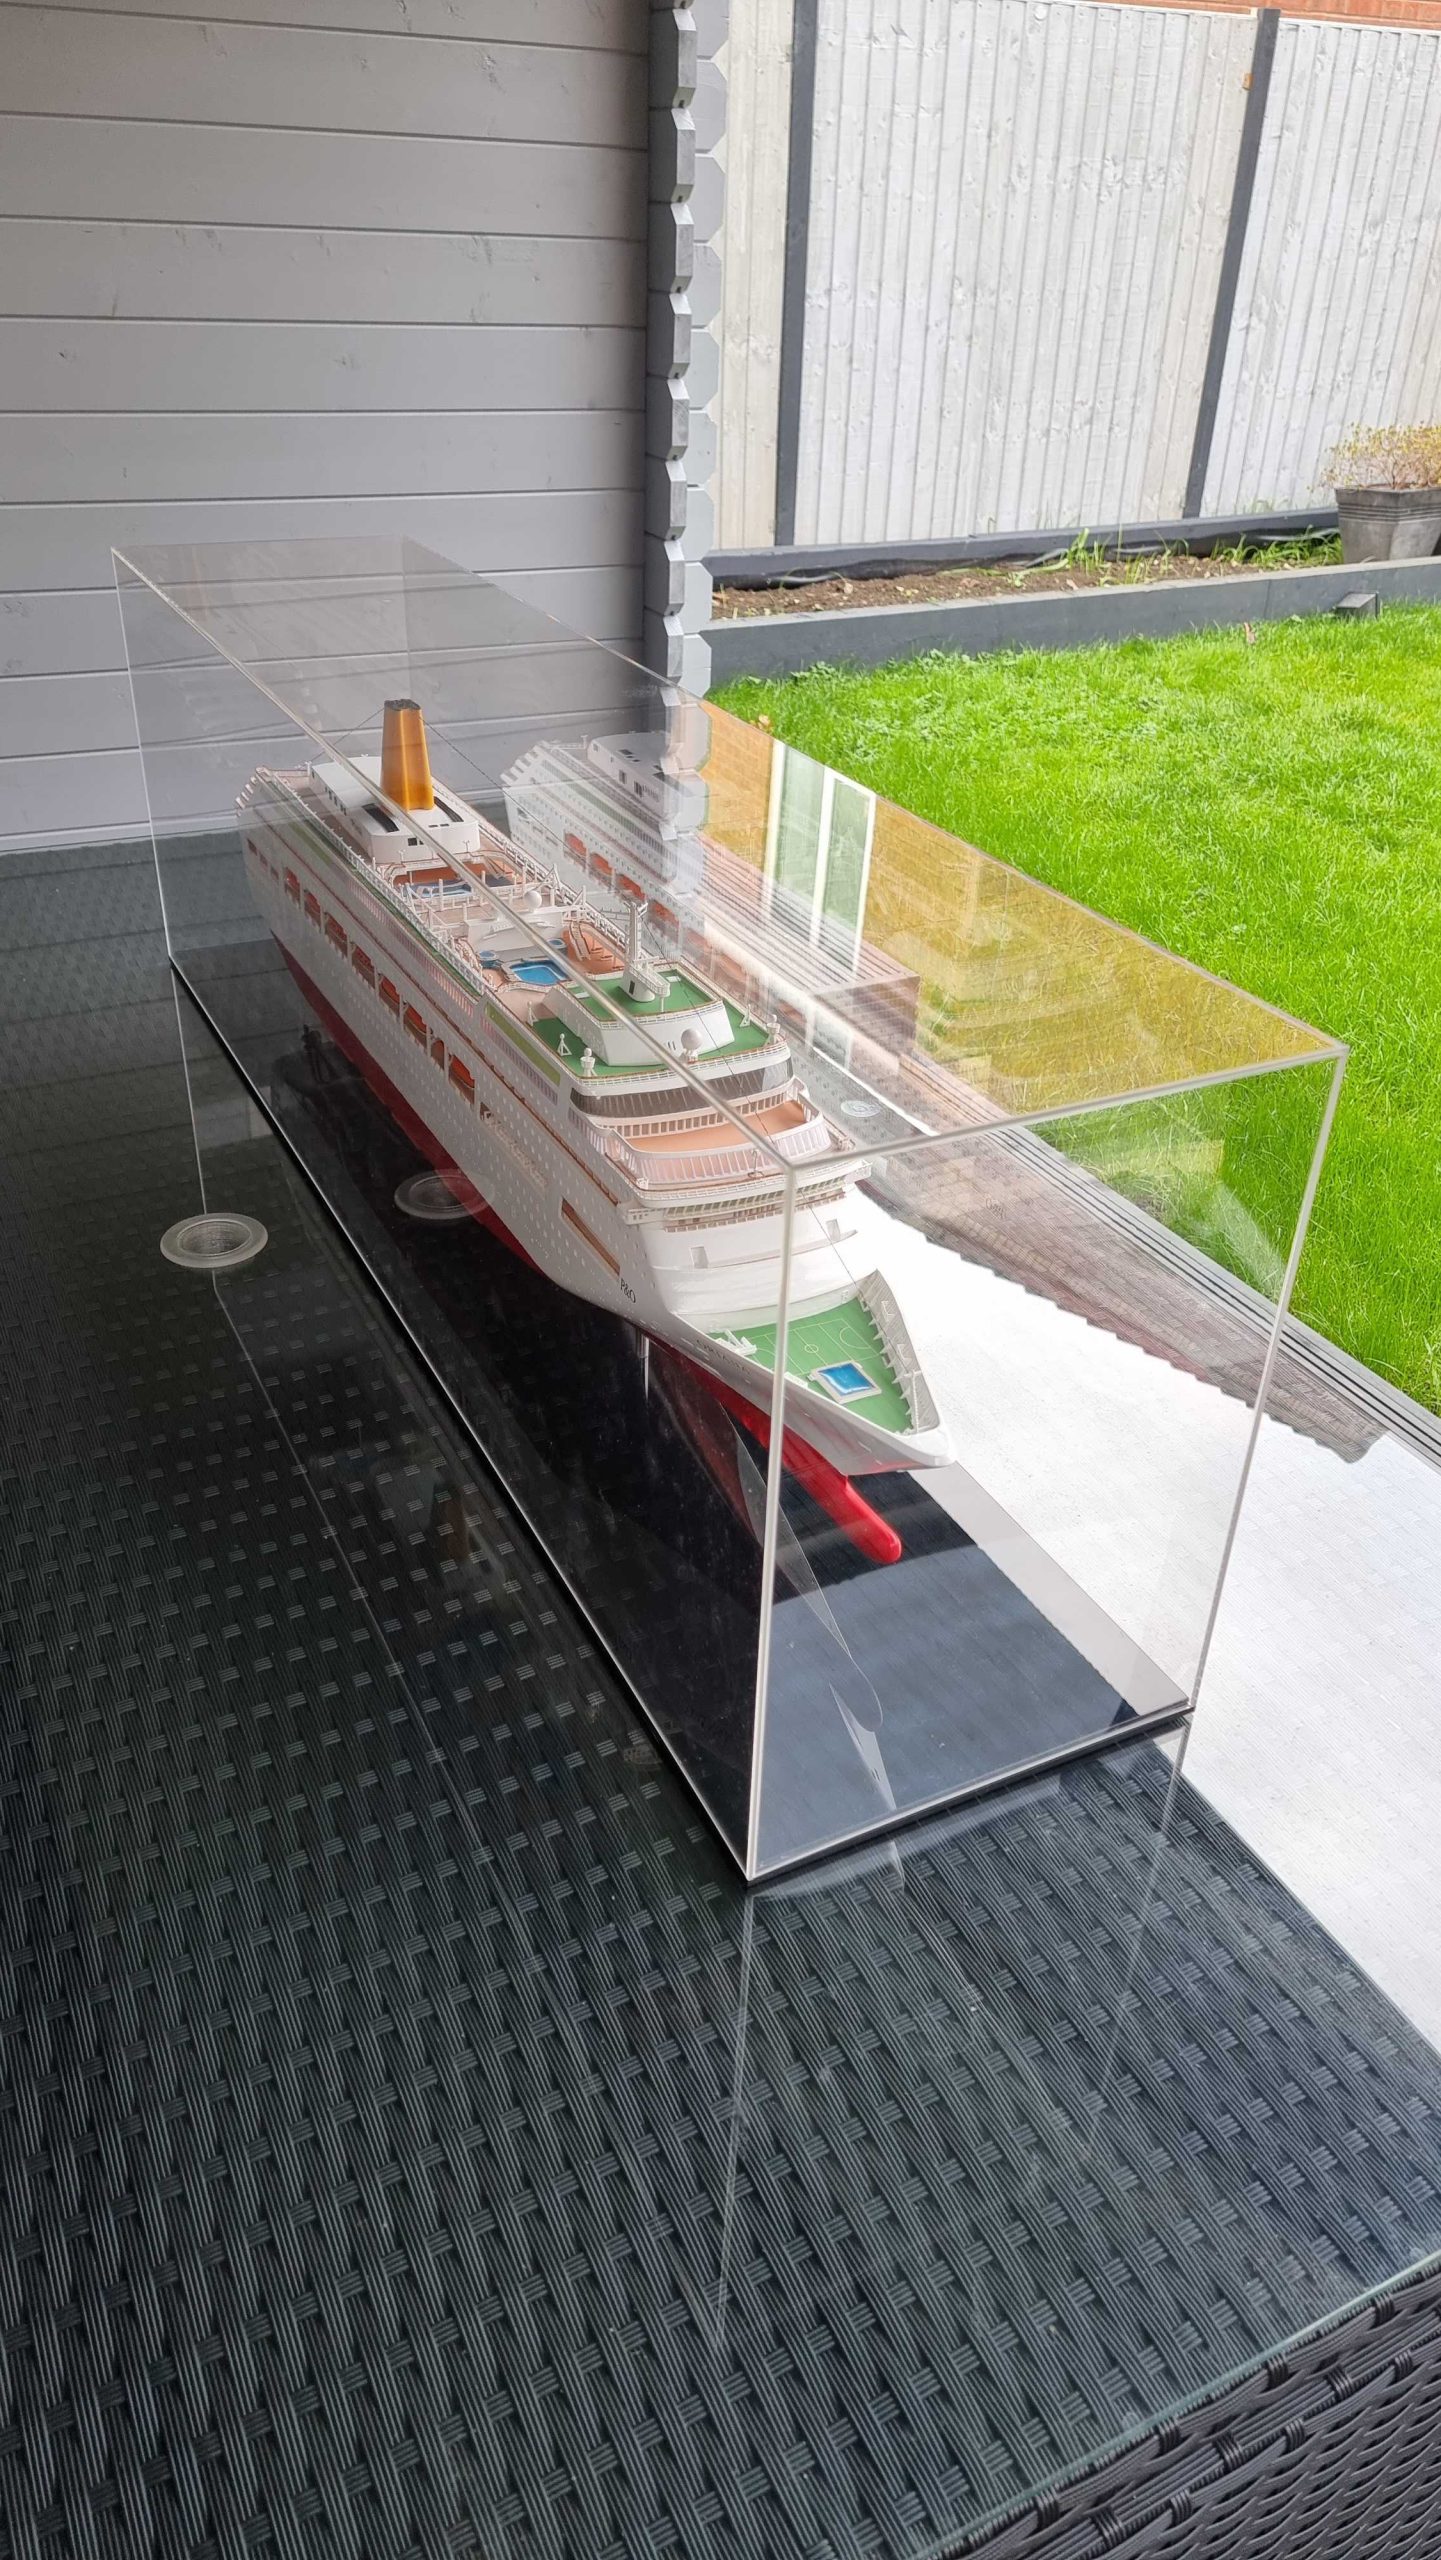 Maquette de bateau Oriana